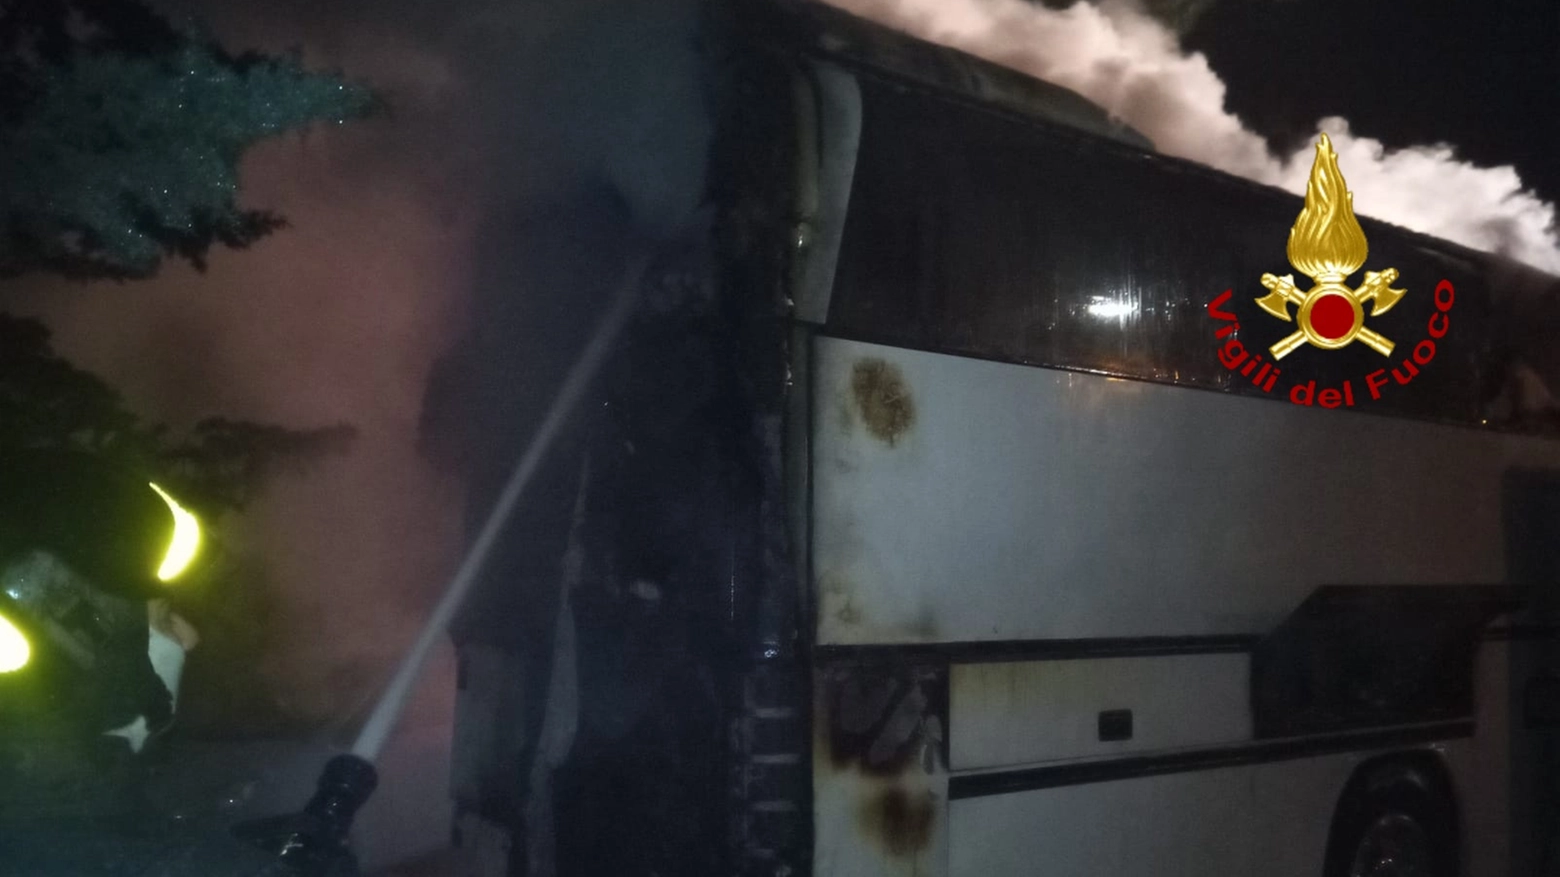 L'autobus in fiamme a Poggio a Caiano